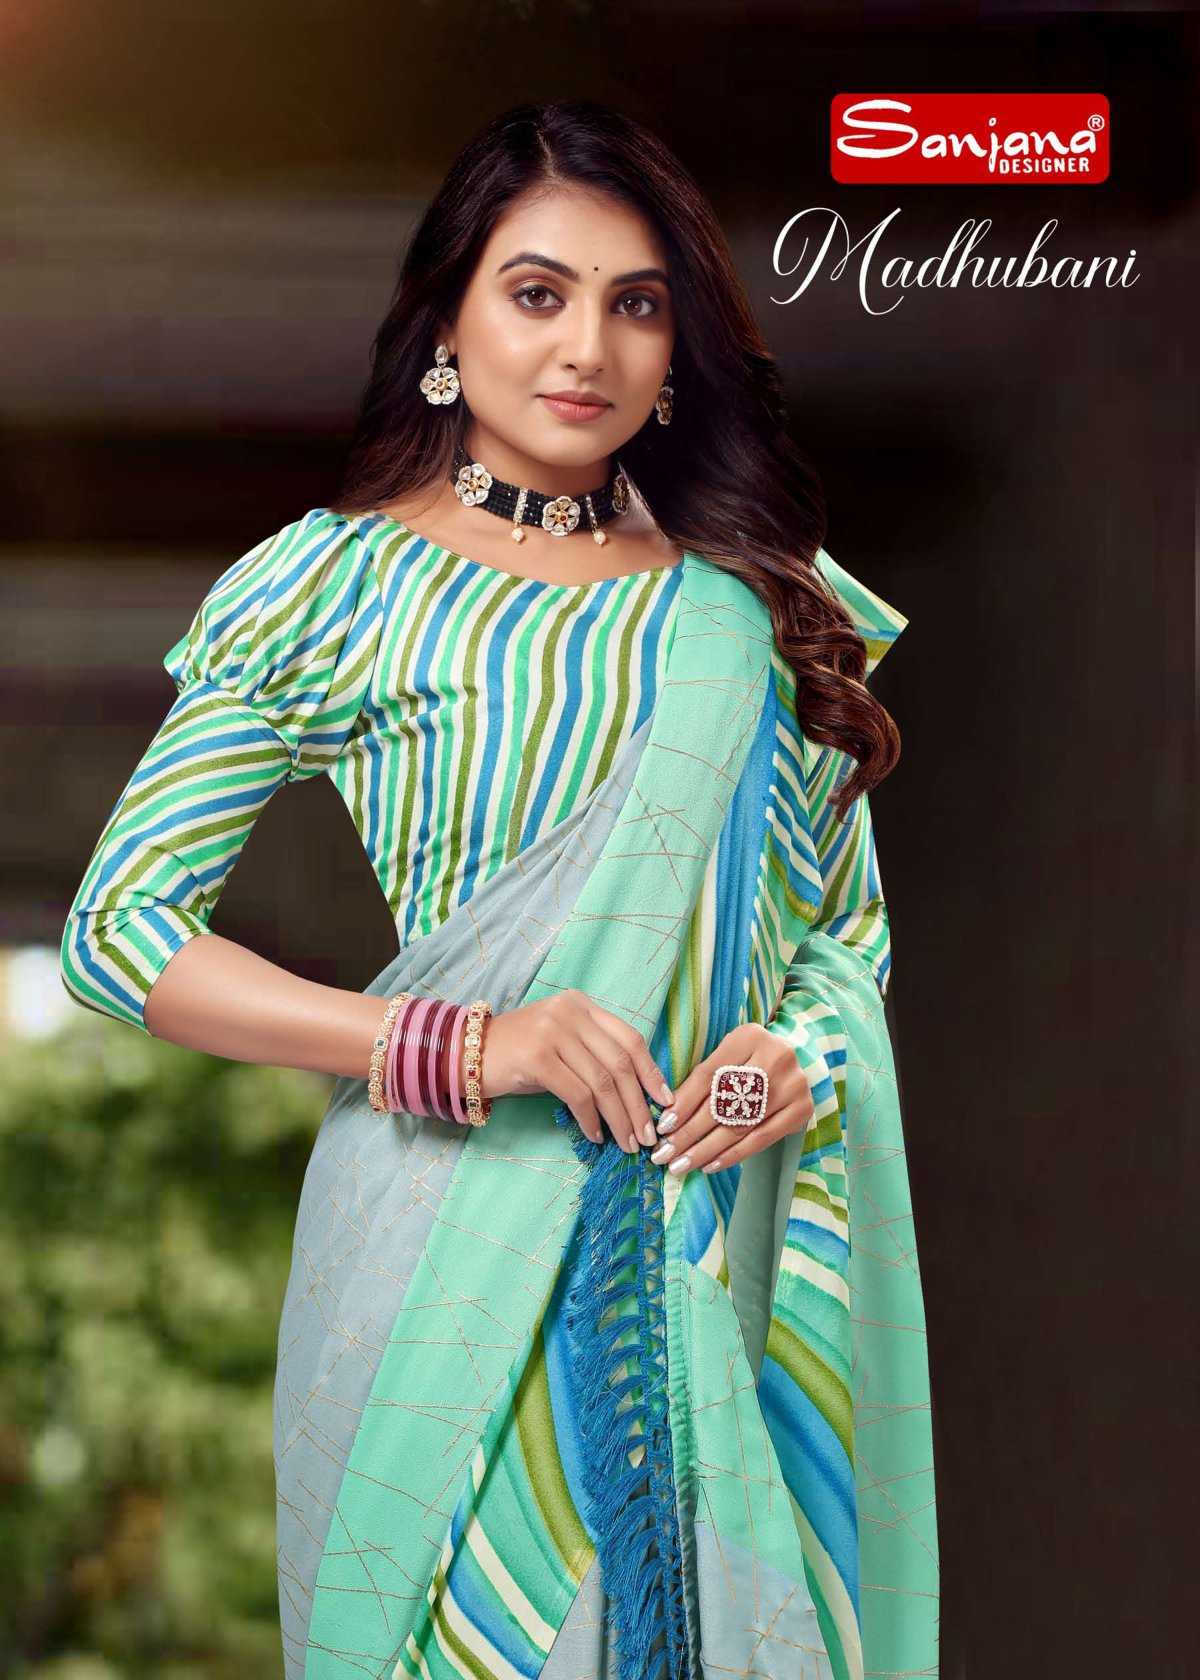 sanjana designer madhubani fancy amazing saree collection